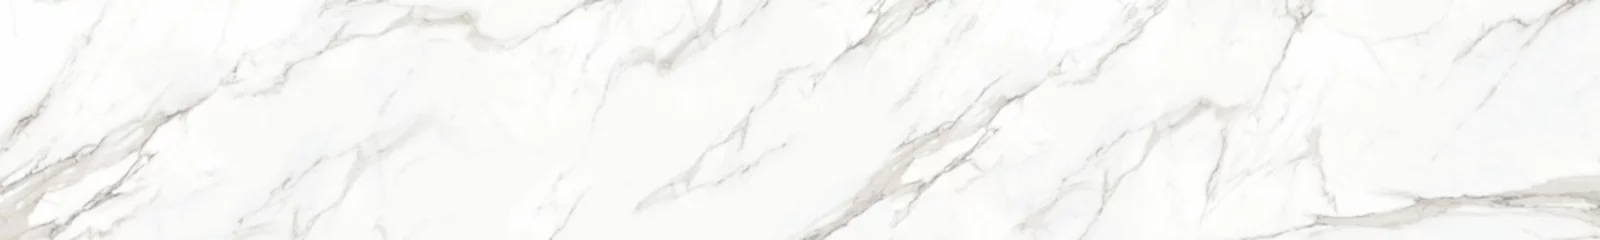 Abwaschbare Fototapete Marmor Panorama aus weißem Marmorstein